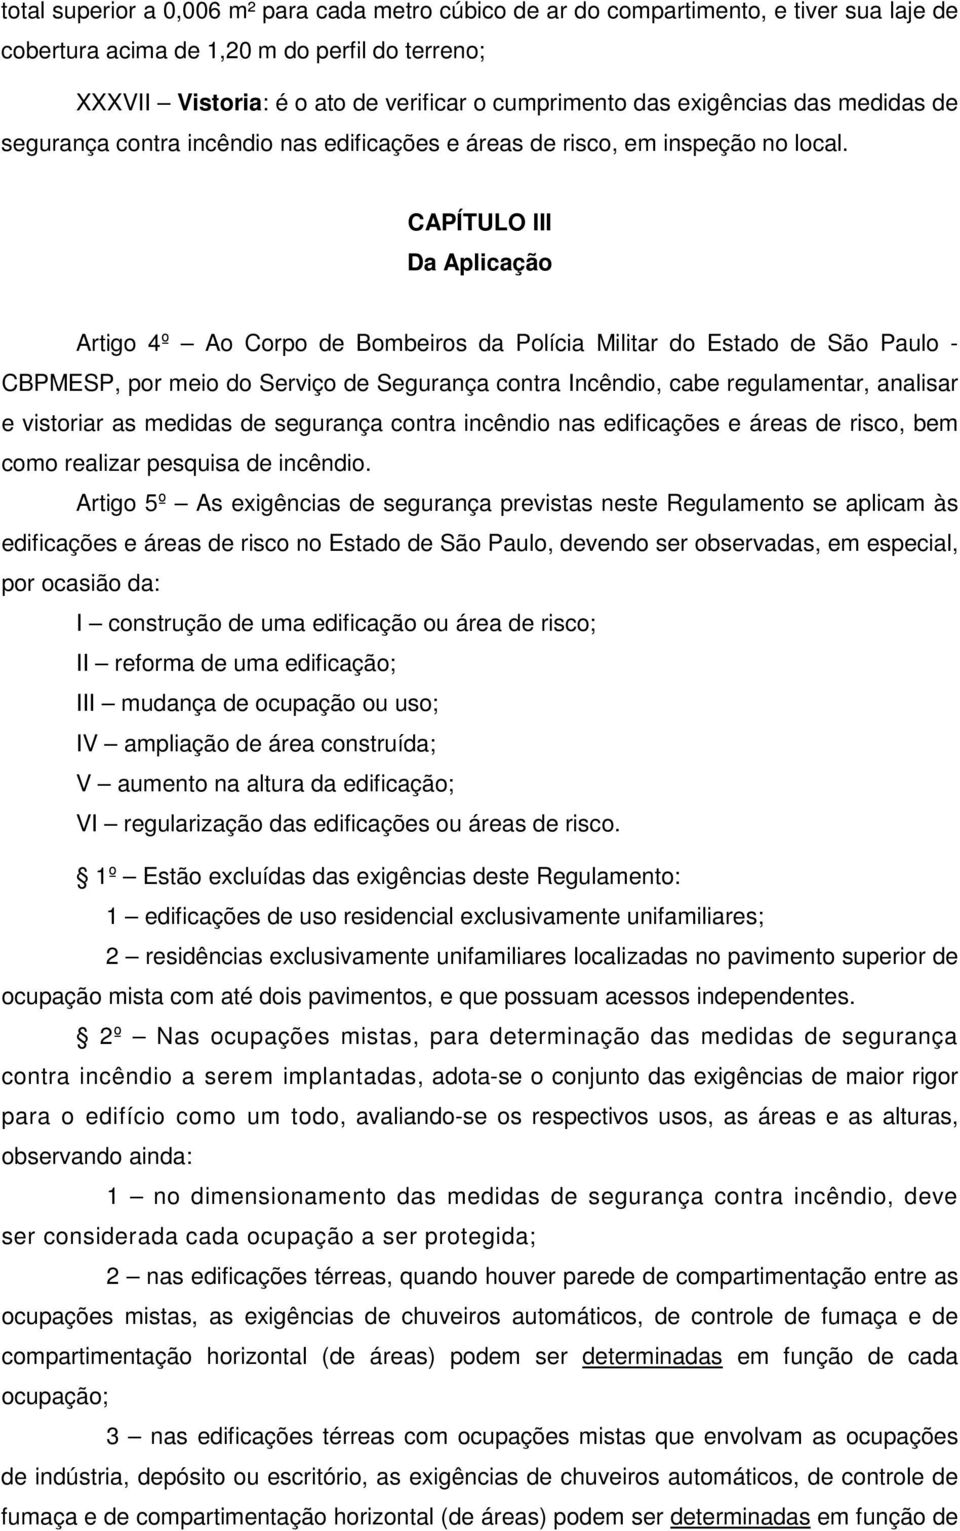 CAPÍTULO III Da Aplicação Artigo 4º Ao Corpo de Bombeiros da Polícia Militar do Estado de São Paulo - CBPMESP, por meio do Serviço de Segurança, cabe regulamentar, analisar e vistoriar as medidas de